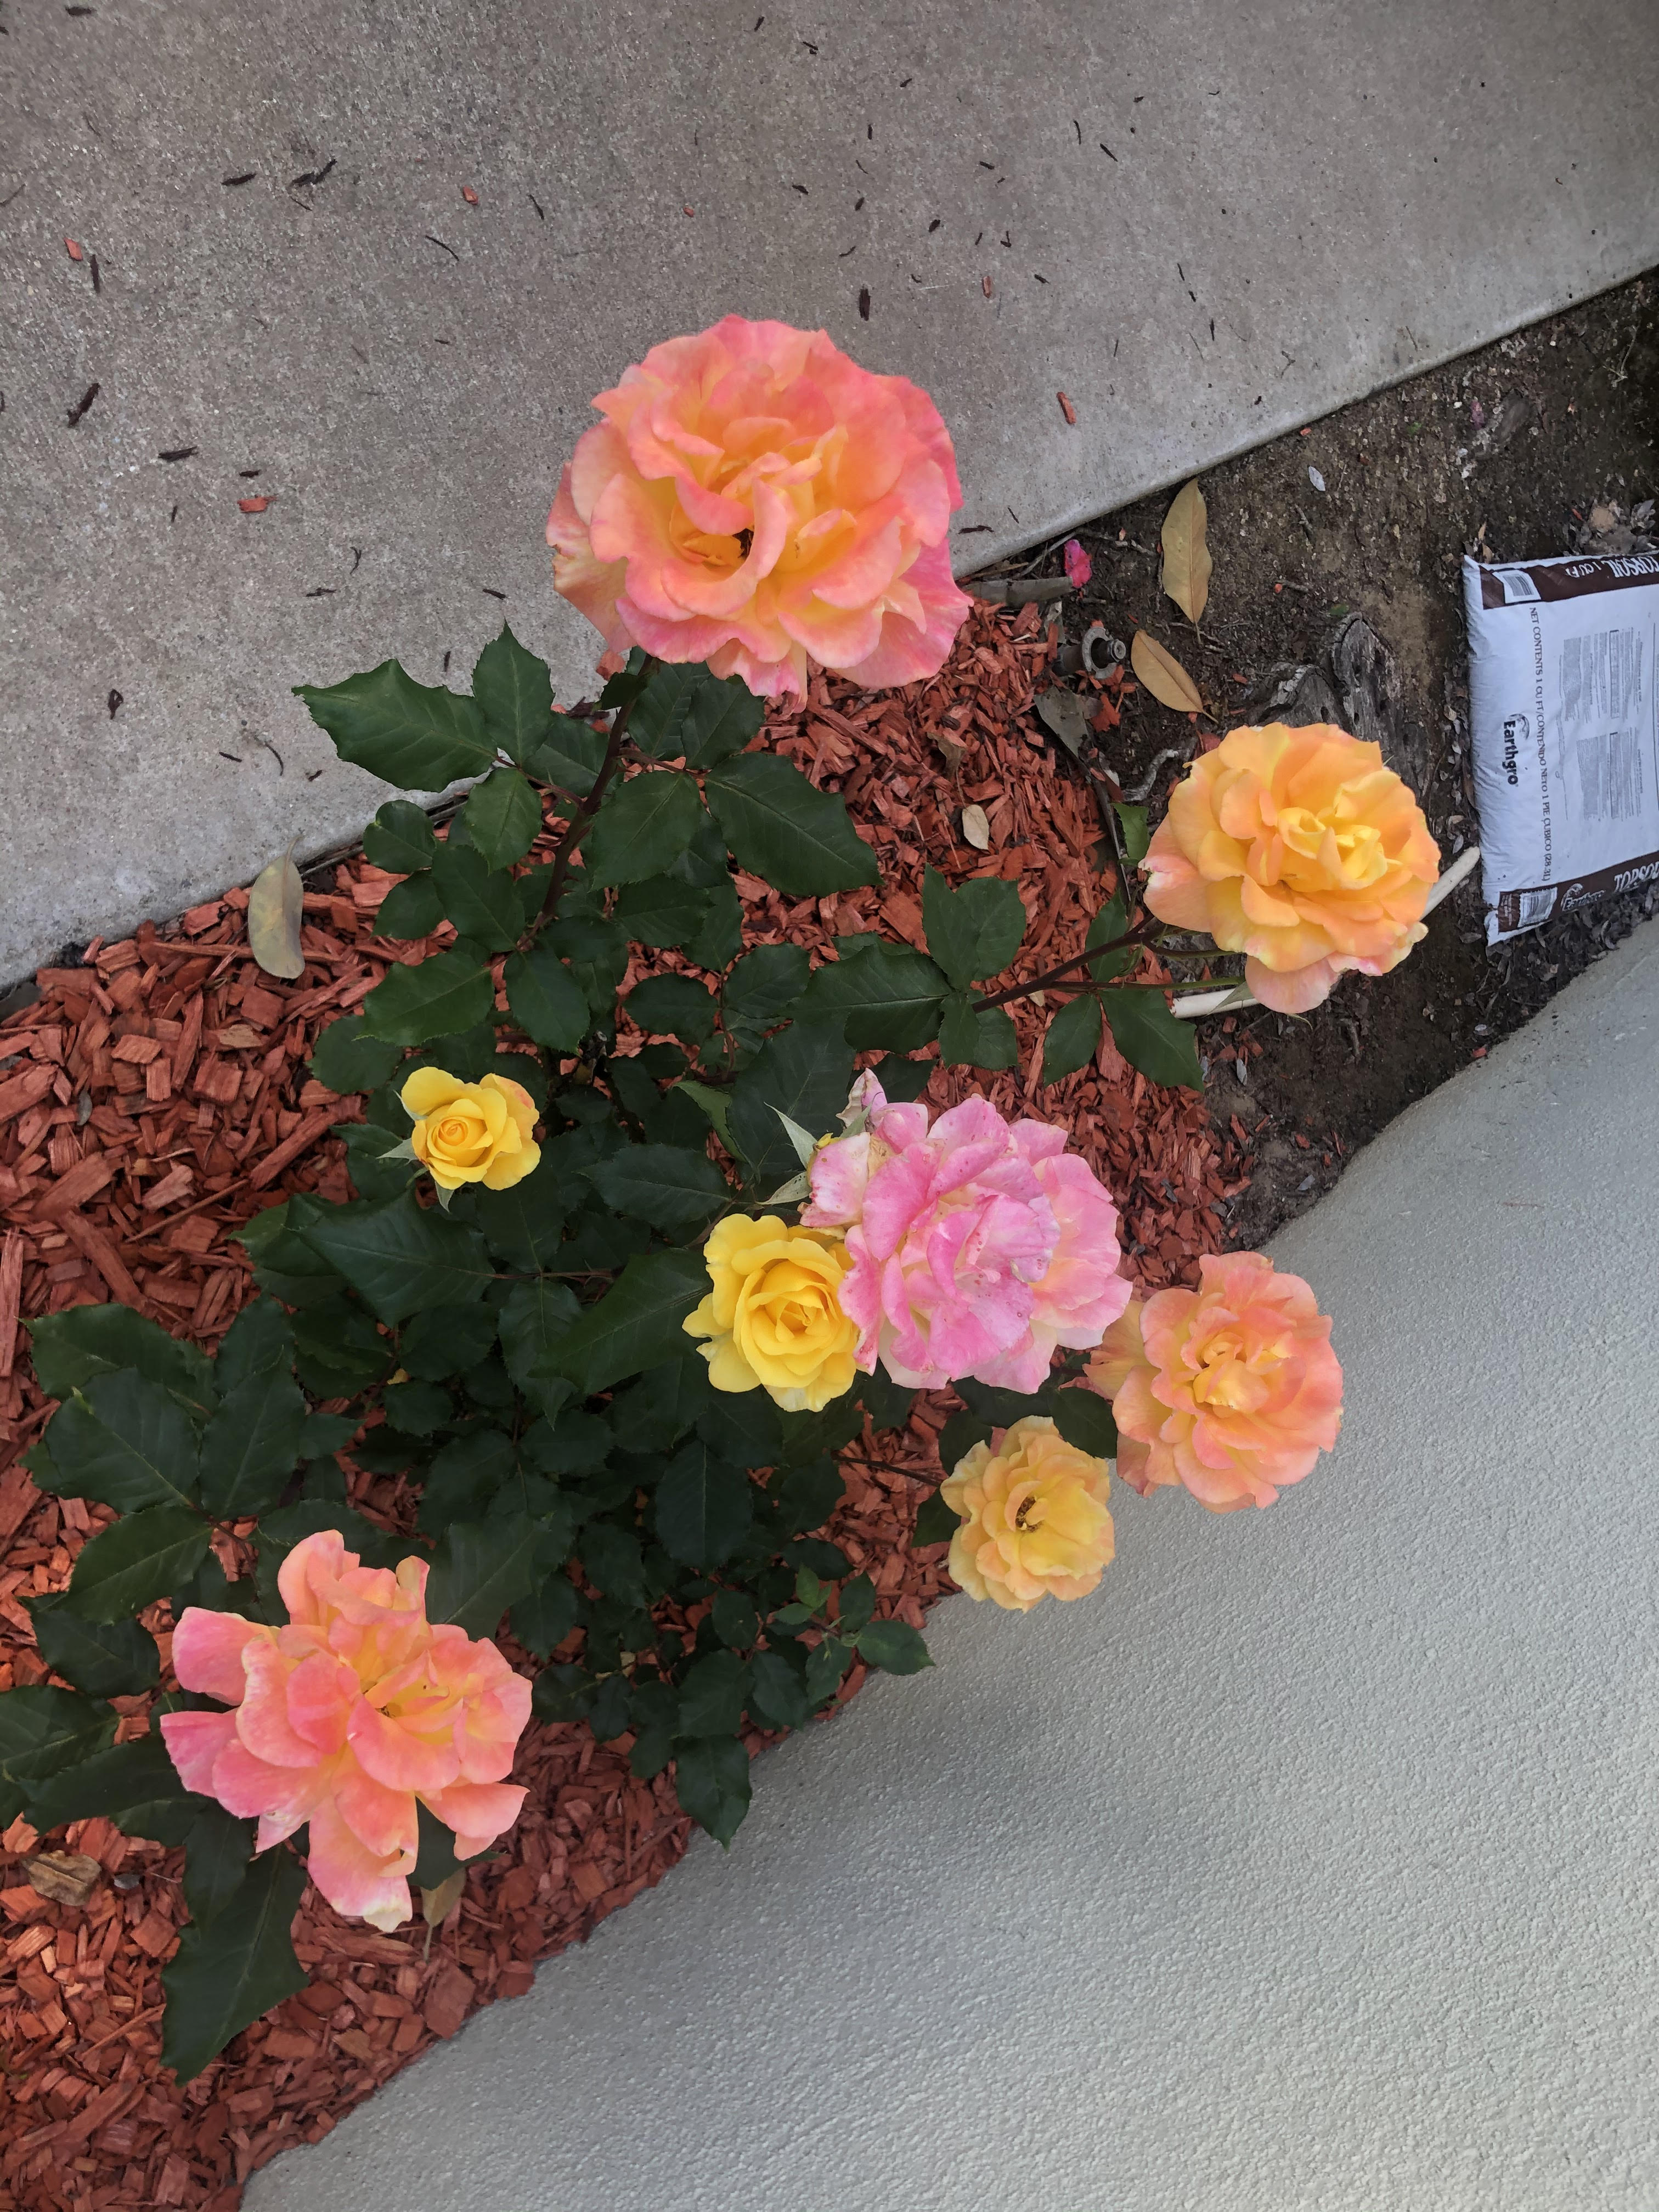 Her favorite roses in her garden.